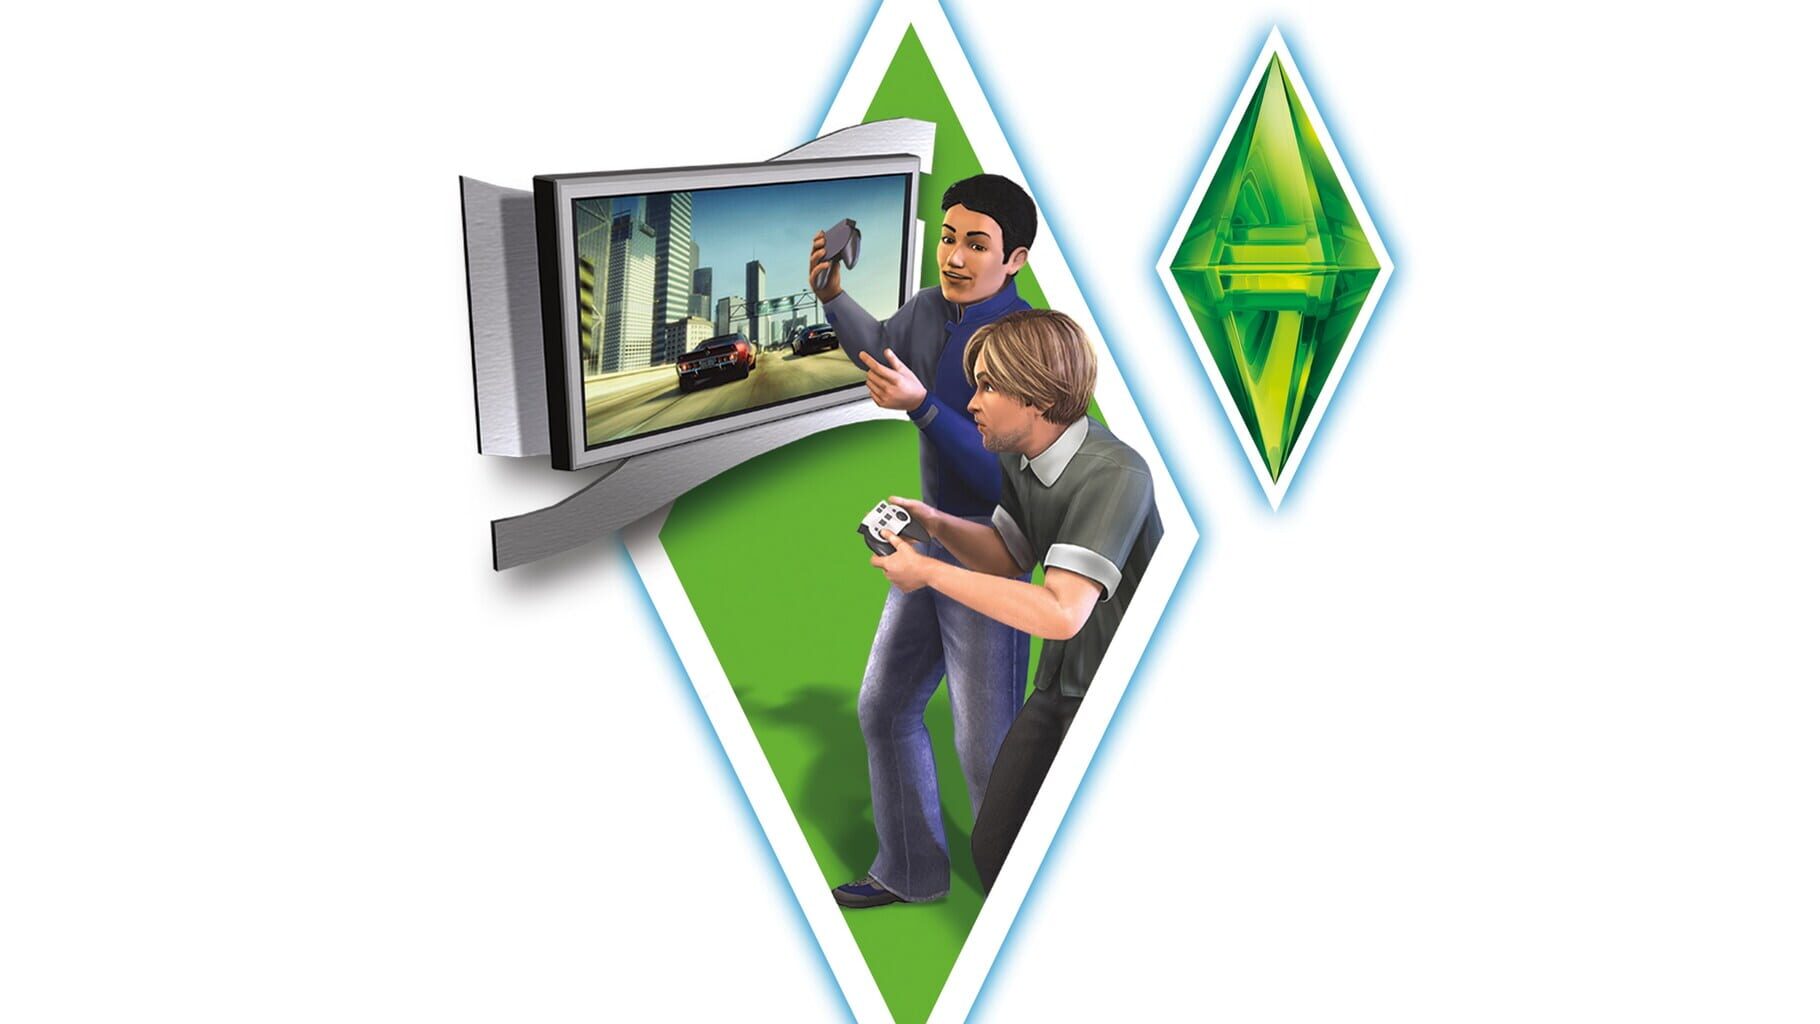 Arte - The Sims 3: Starter Pack